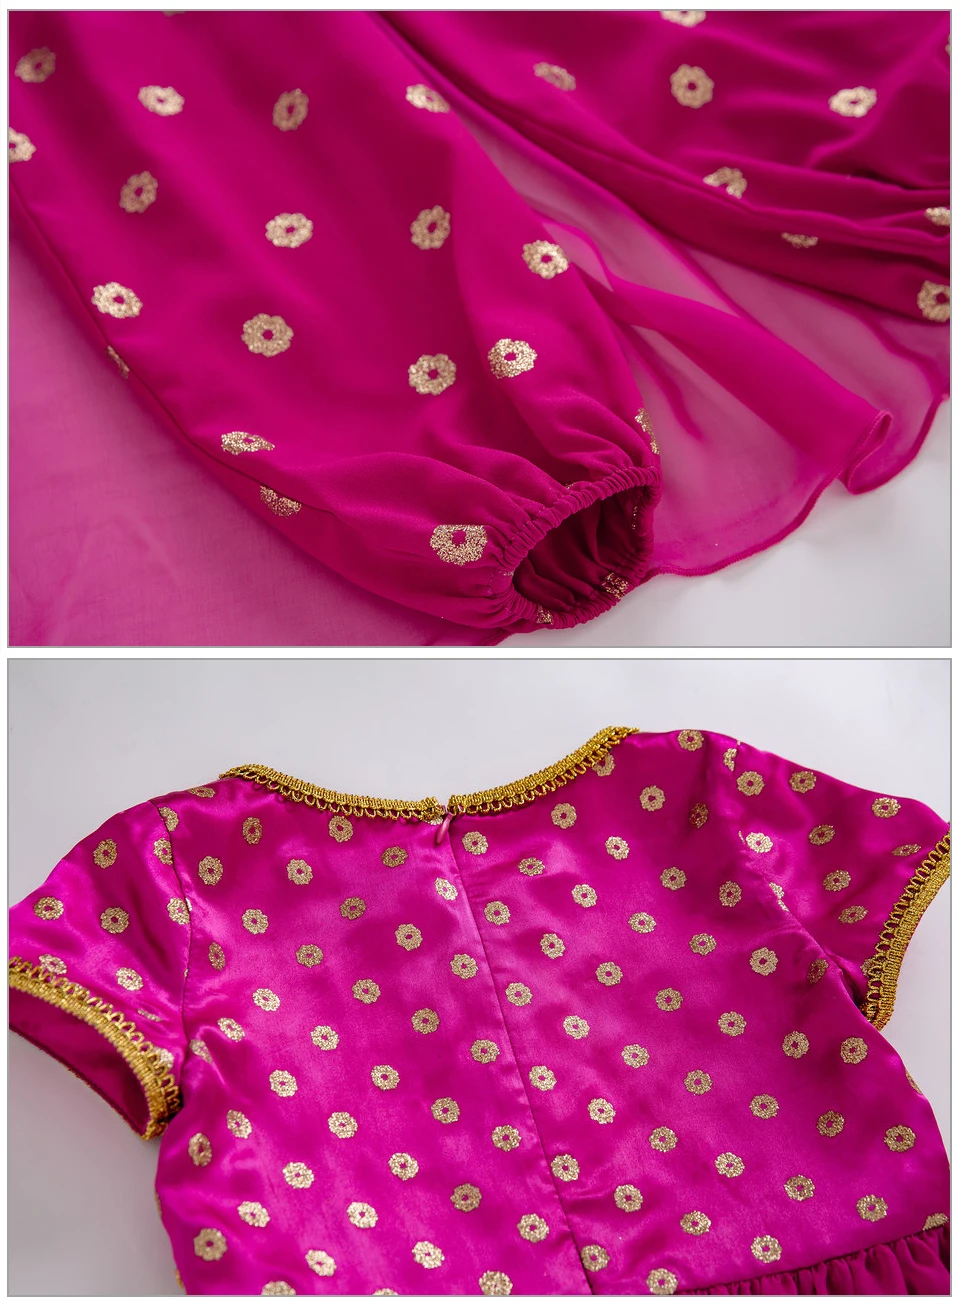 Pettigirl/ США; ярко-розовый детский комбинезон; вечерние костюмы принцессы для девочек; костюмы для костюмированной вечеринки; костюм для детей с золотым принтом